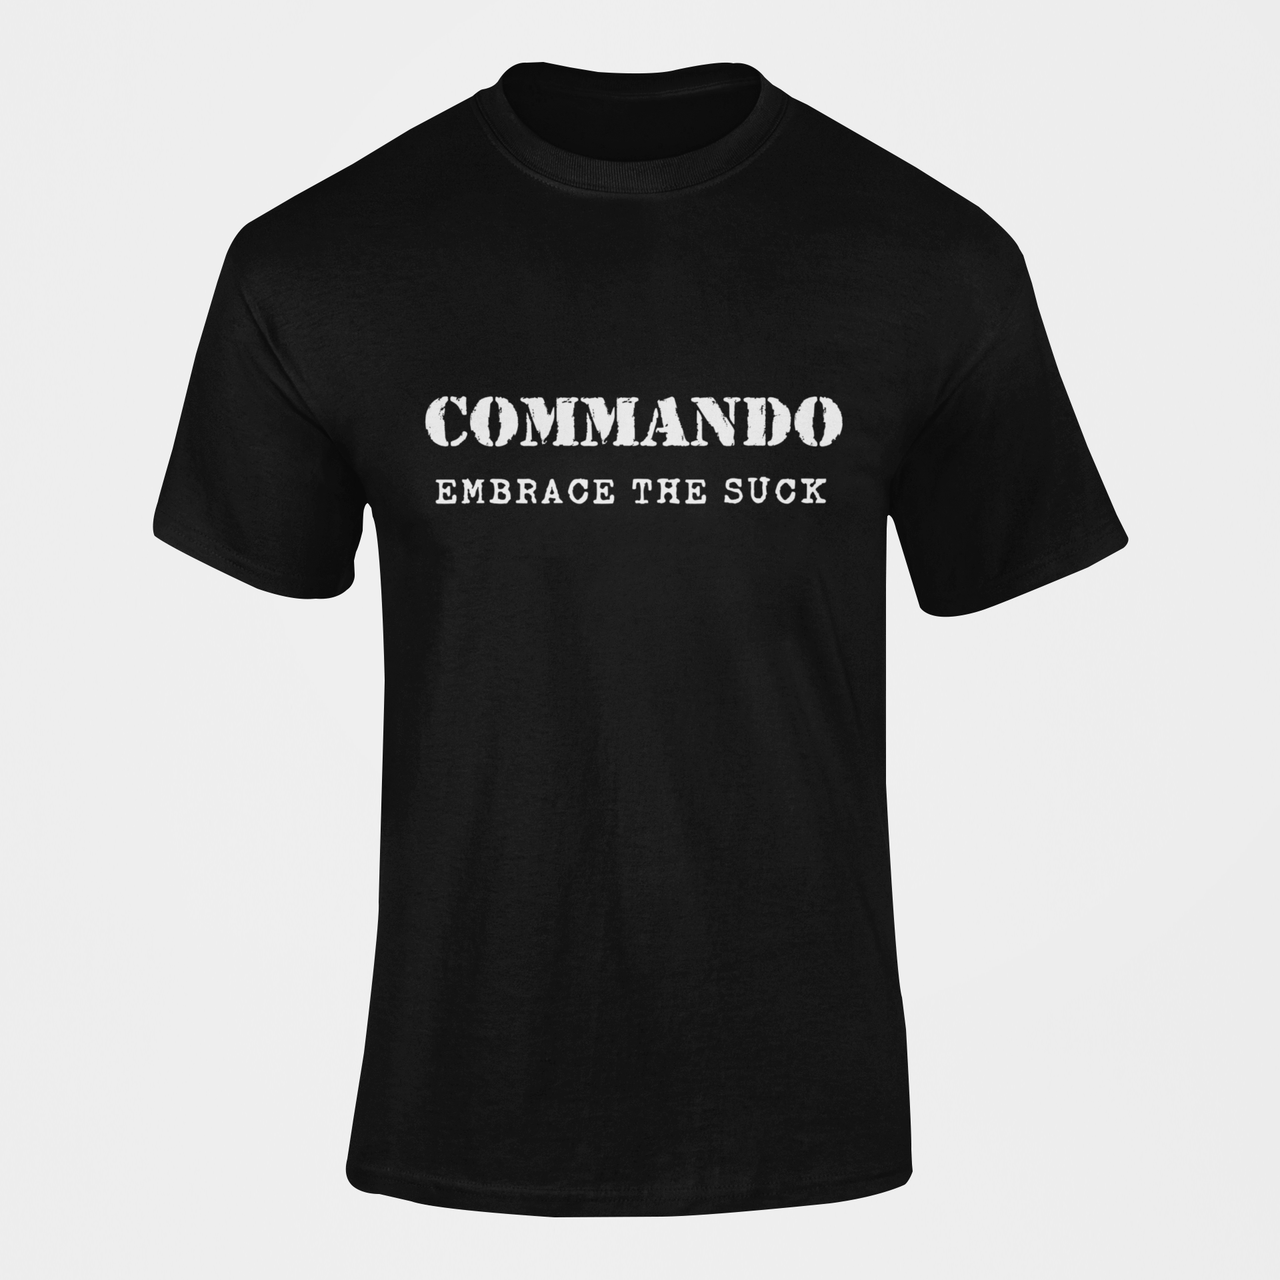 Commando T-shirt - Commando - Embrace The Suck (Men)